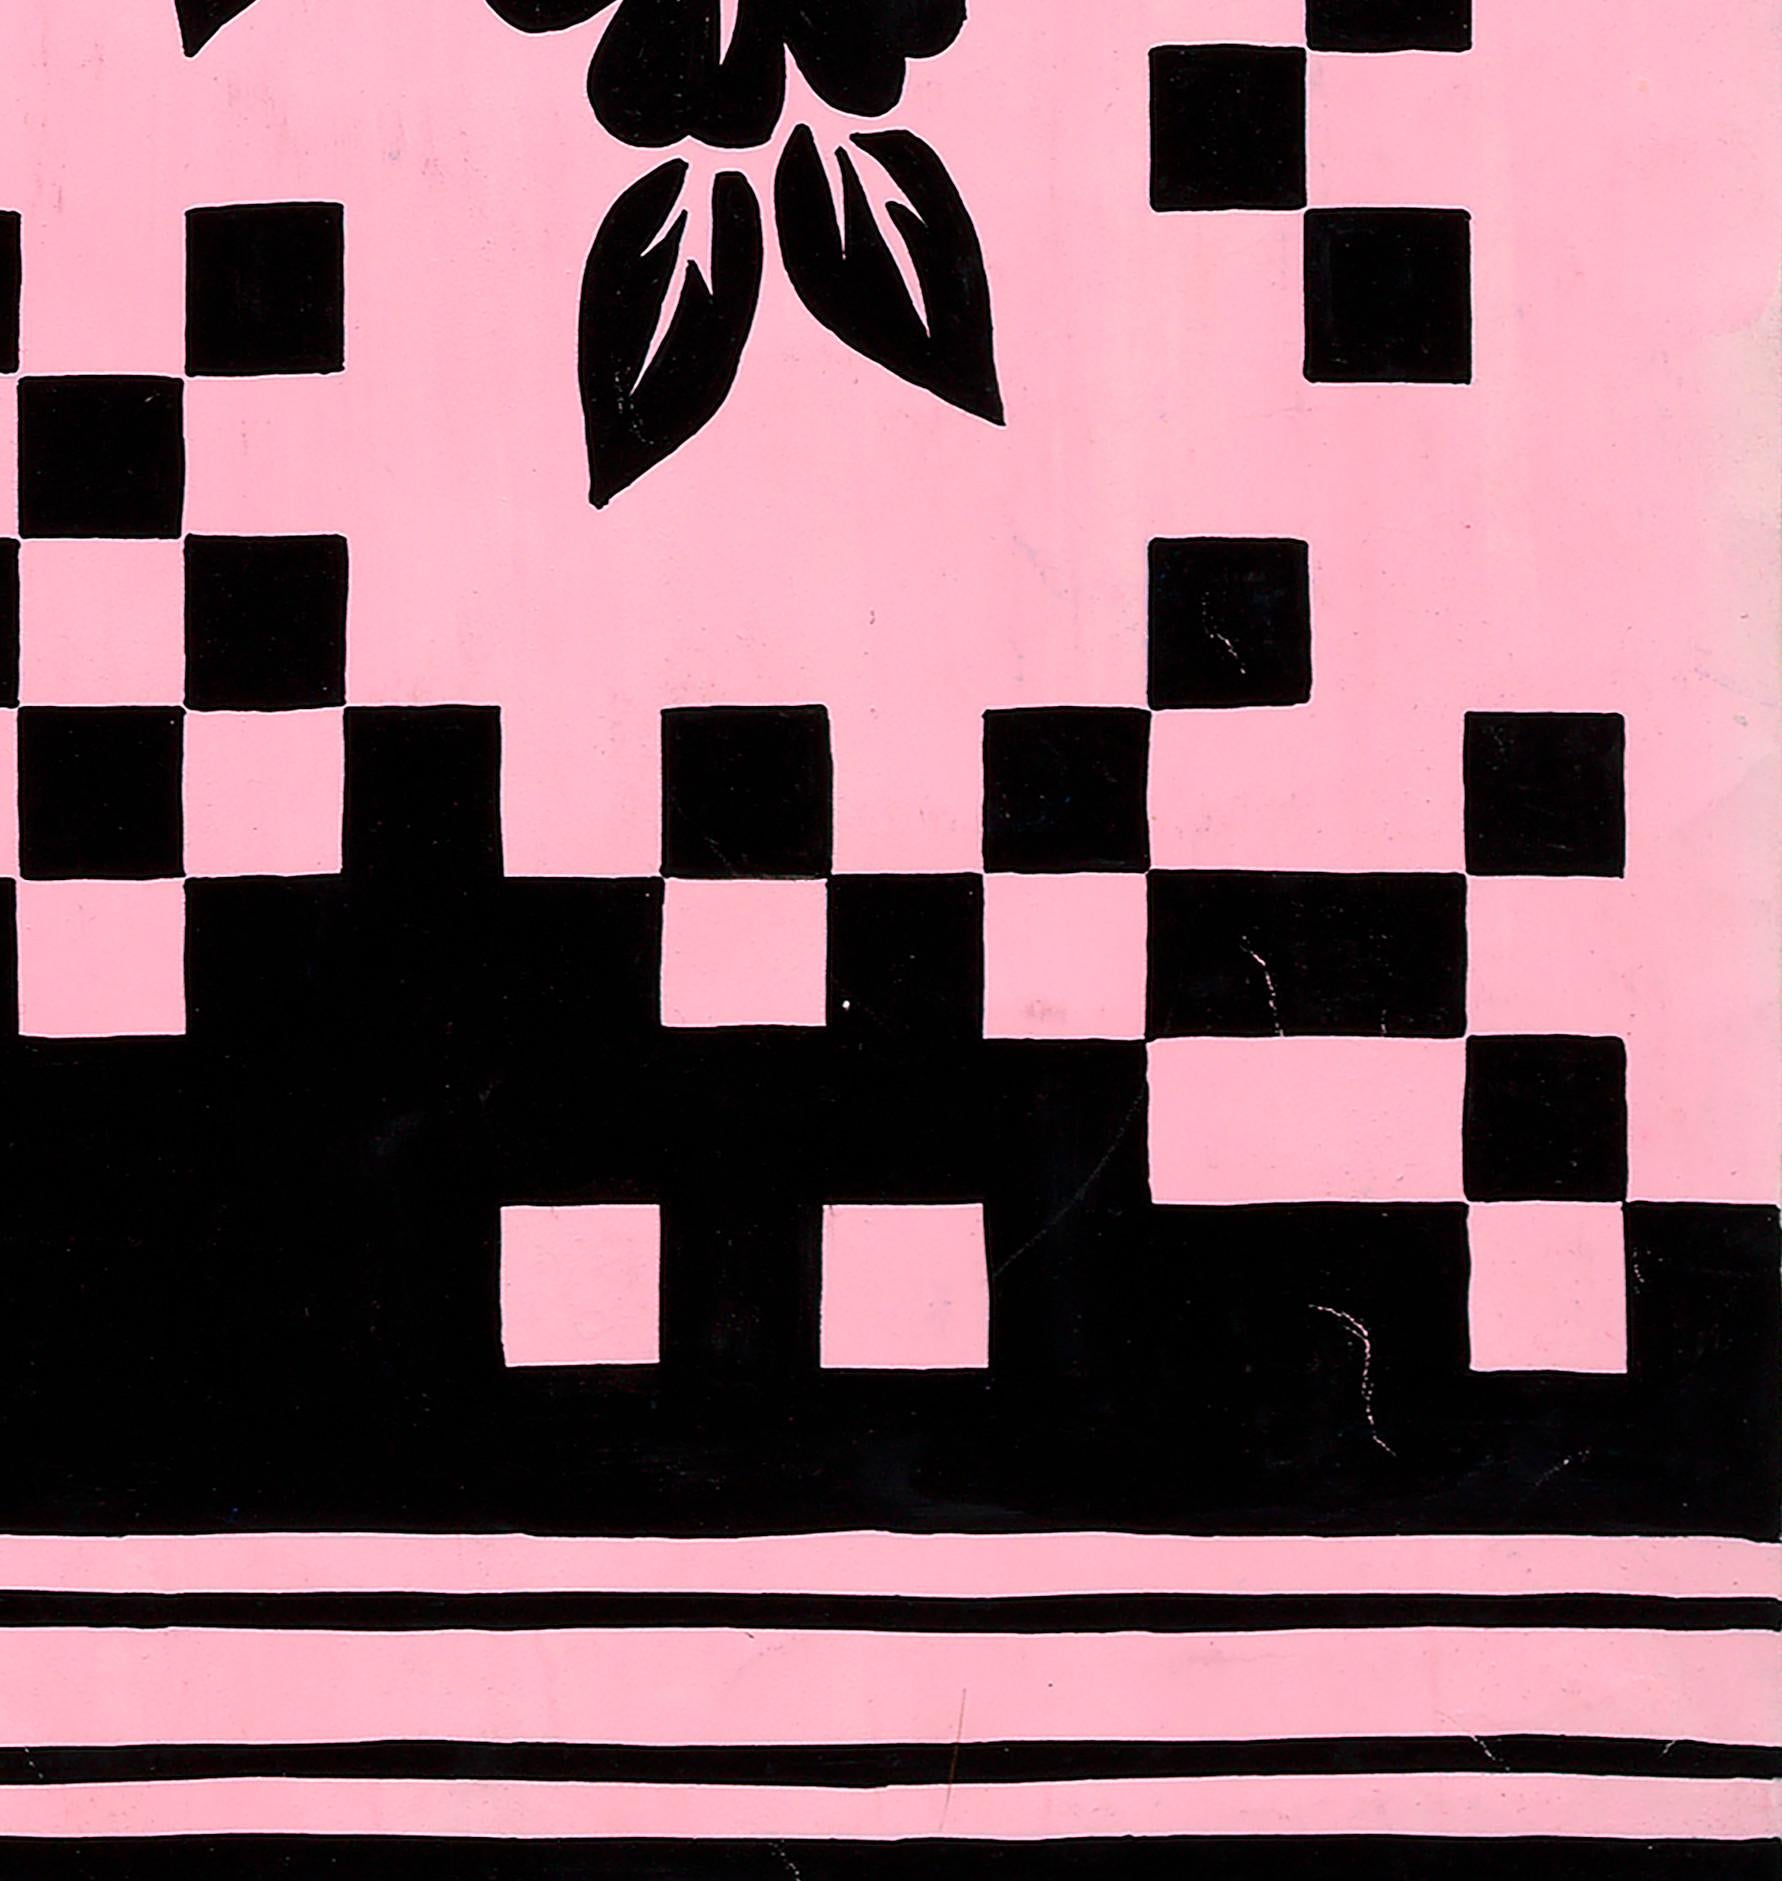 Conception textile originale des années 70 peinte à la main à la gouache, couleur rose et noire sur papier - Rose Still-Life par Unknown